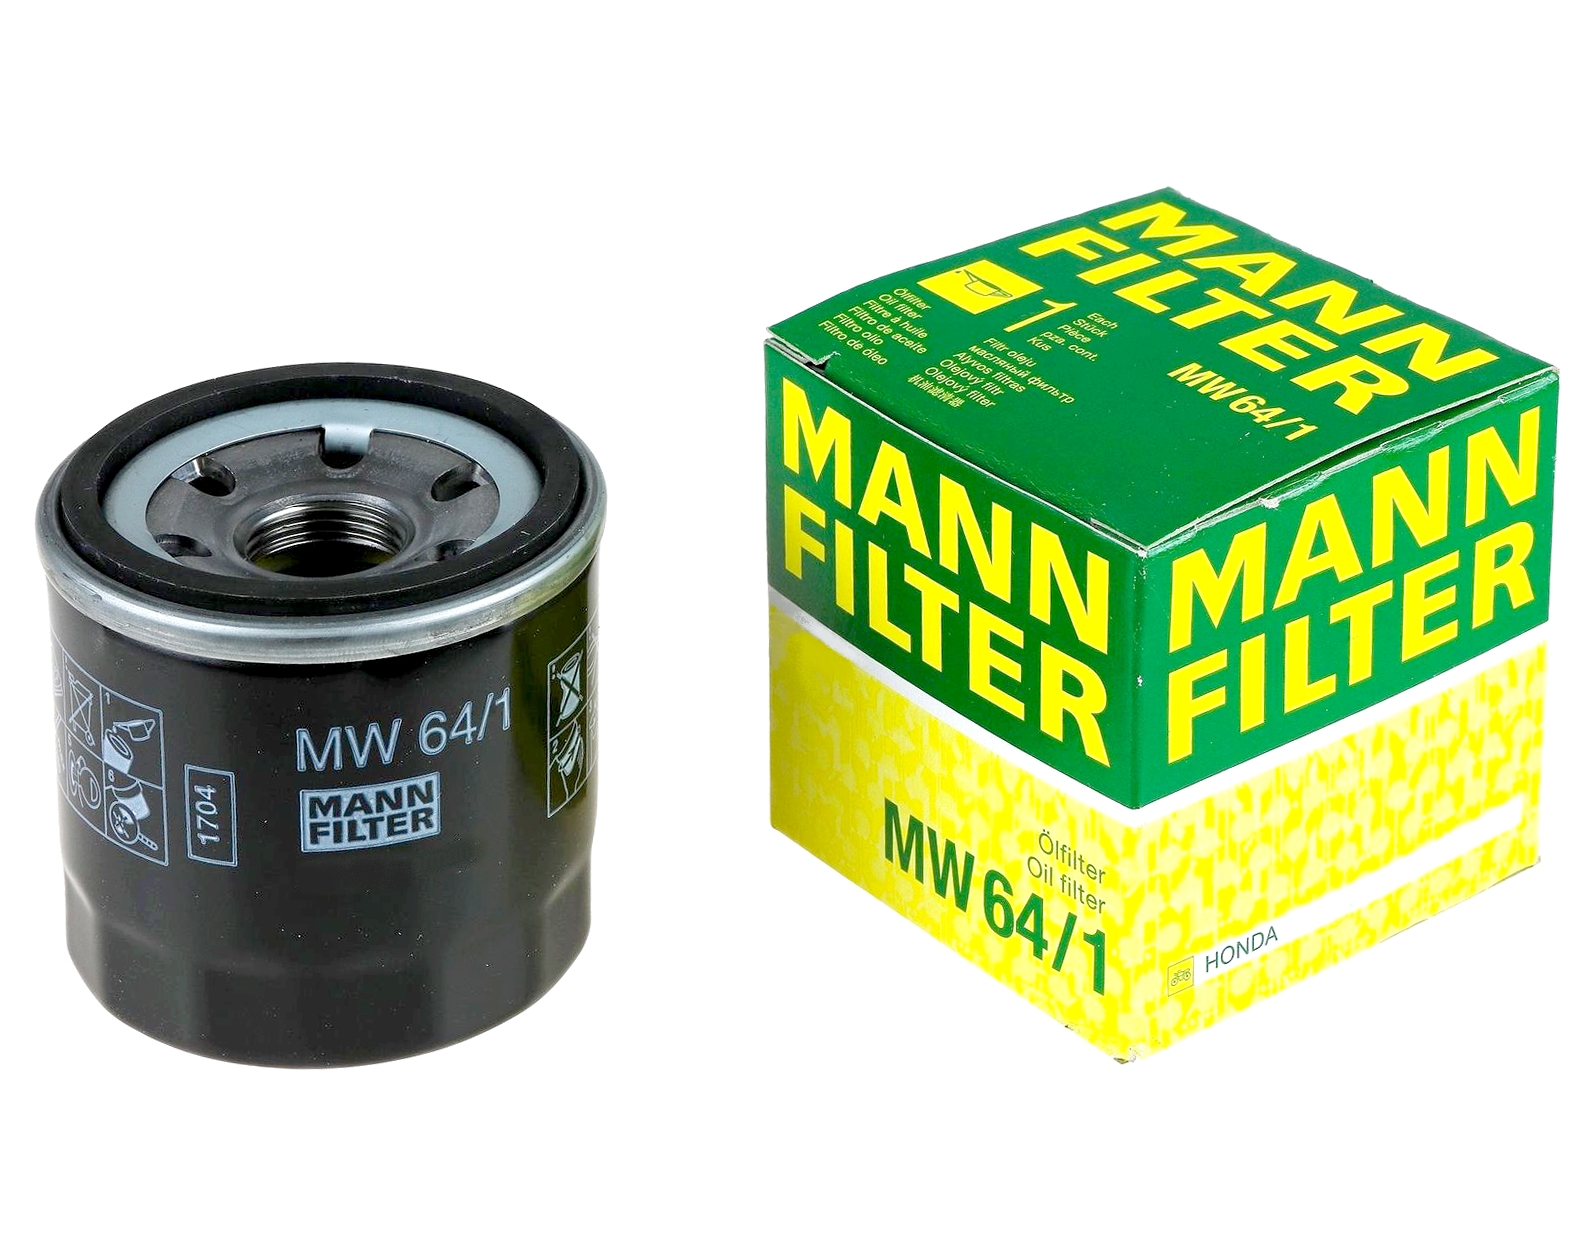 Купить лучший масляный фильтр. Фильтр масляный Mann mw64. Масляный фильтр Mannol mw64. Mann-Filter MW 64/1 фильтр масляный для мотоциклов. Фильтр Манн 64/1 на Хонда.